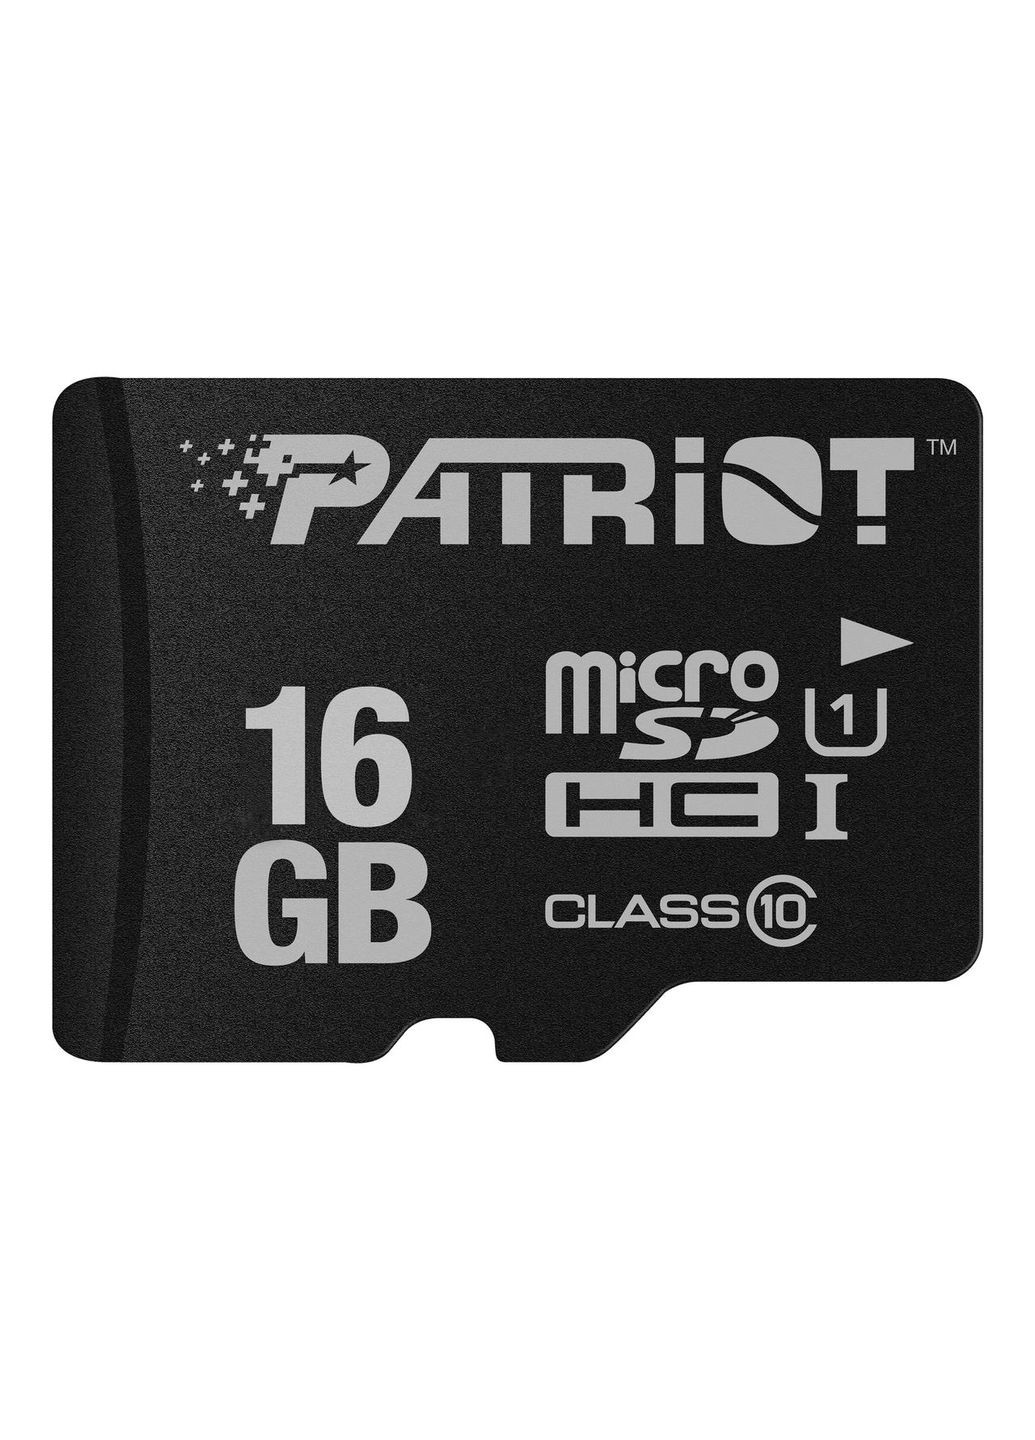 Картка пам'яті microSDHC LX Series 16 GB Class 10 з адаптером СД Patriot (282001356)